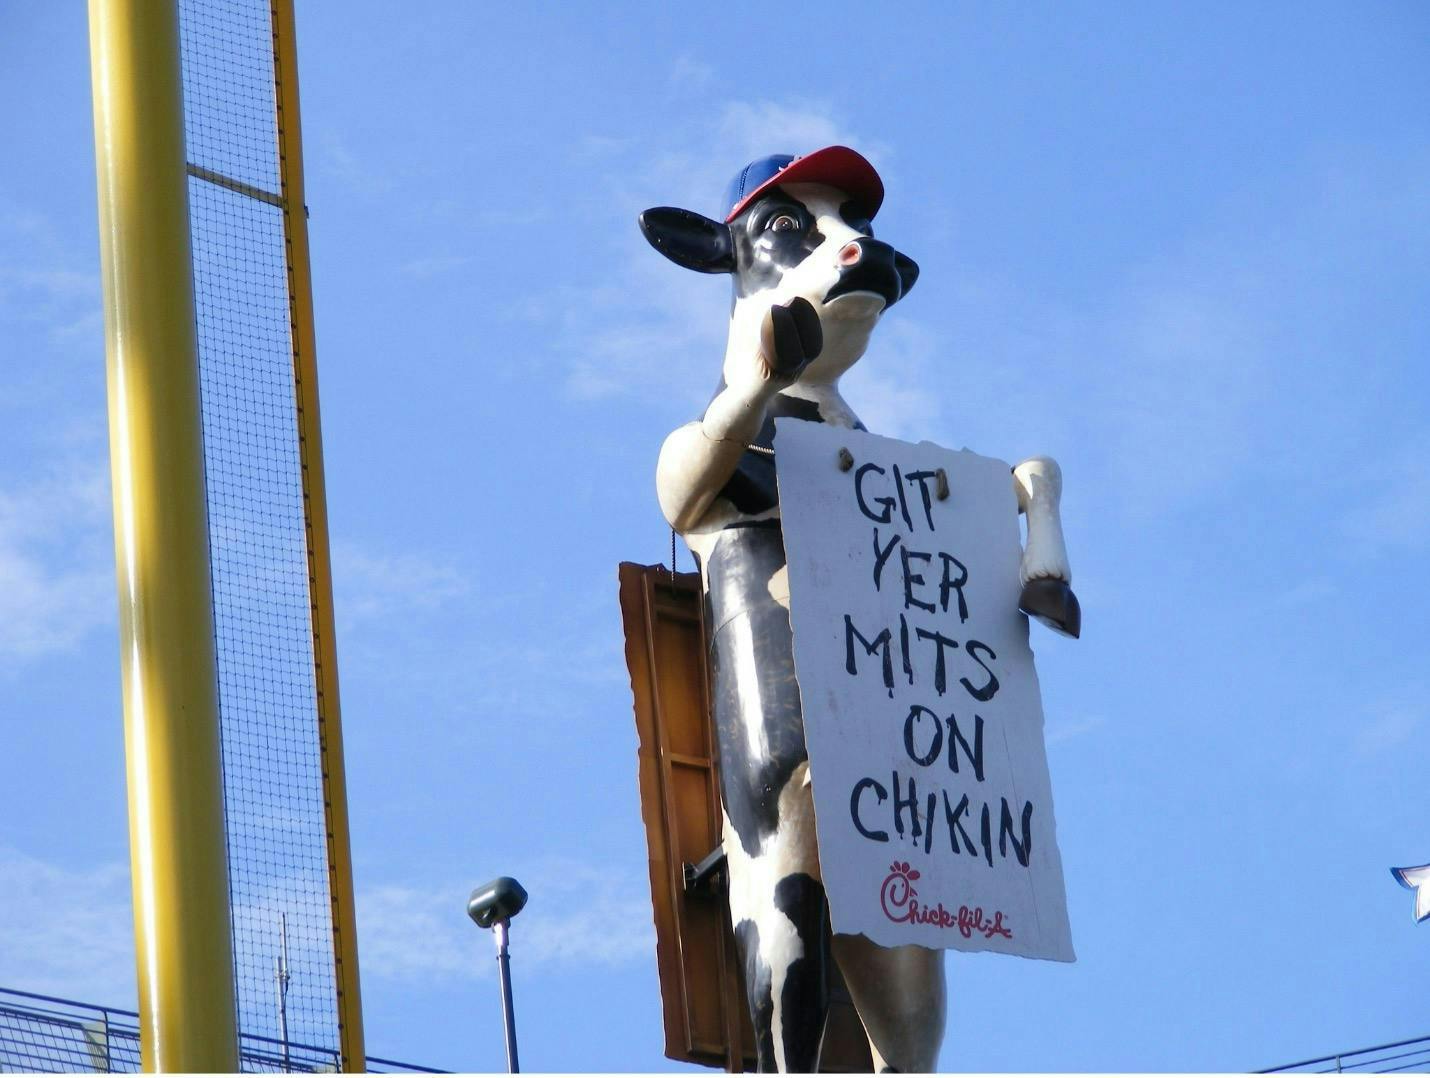 Een billboard van Chick-Fil-A van een koe die een bord vasthoudt met daarop de woorden: "Git yer mits on chickin".